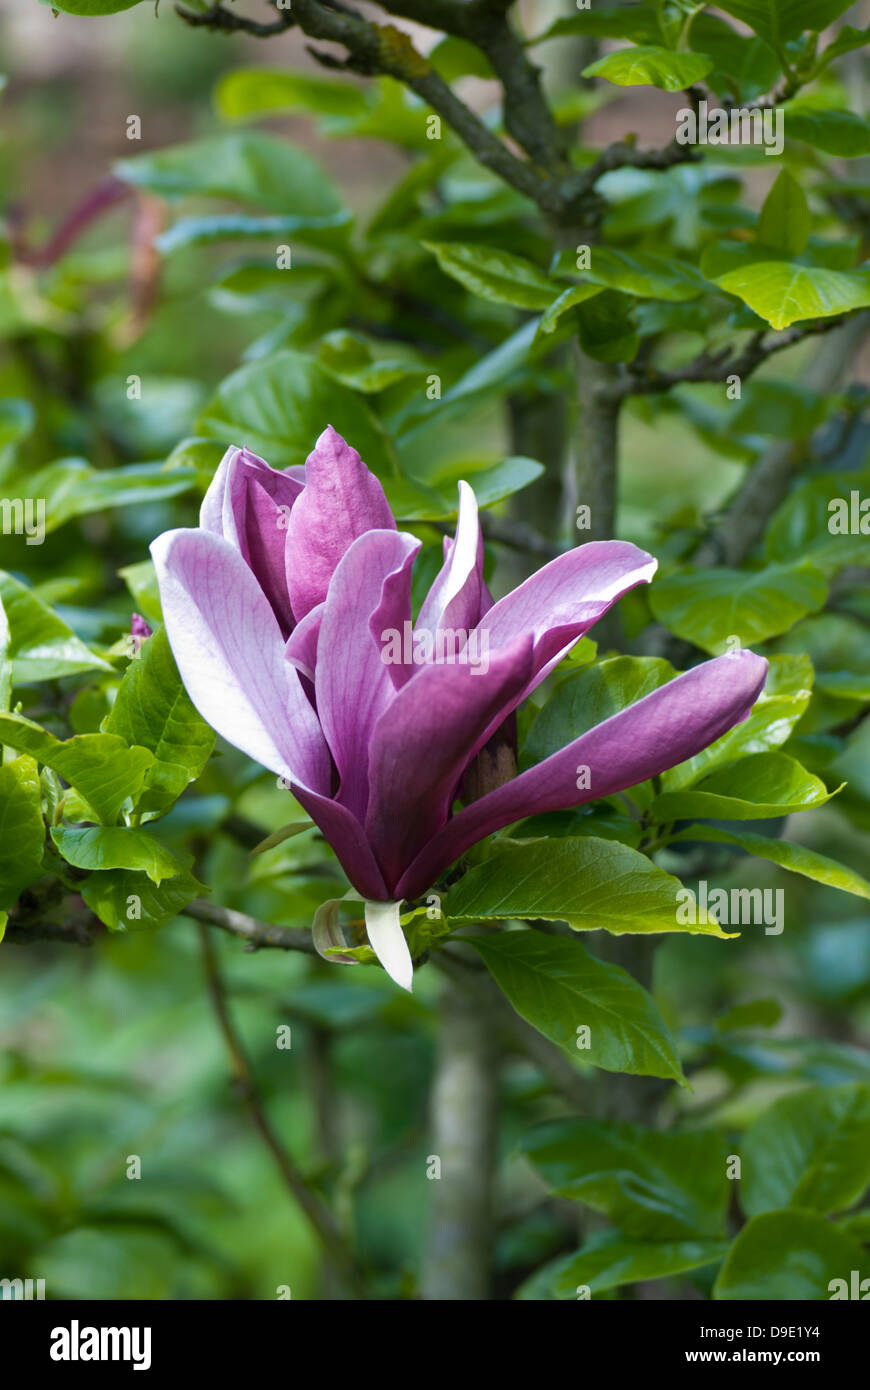 Magnolia lilliflora Nigra, black lily magnolia Stock Photo